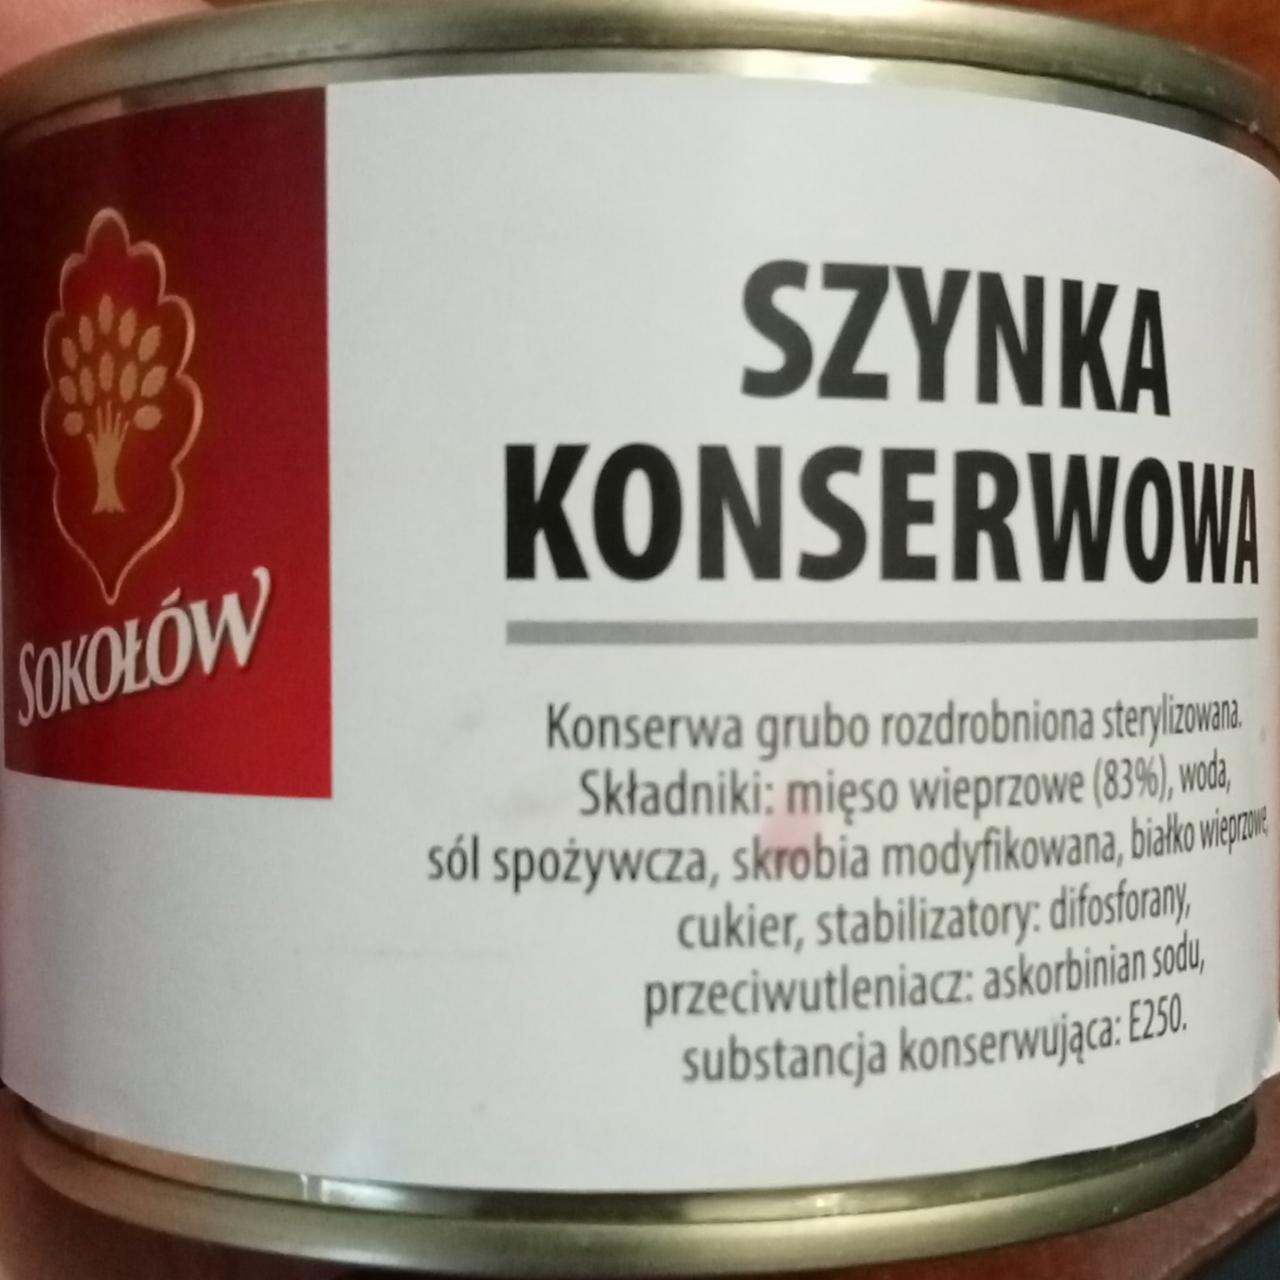 Fotografie - Szynka konserwowa Sokołów